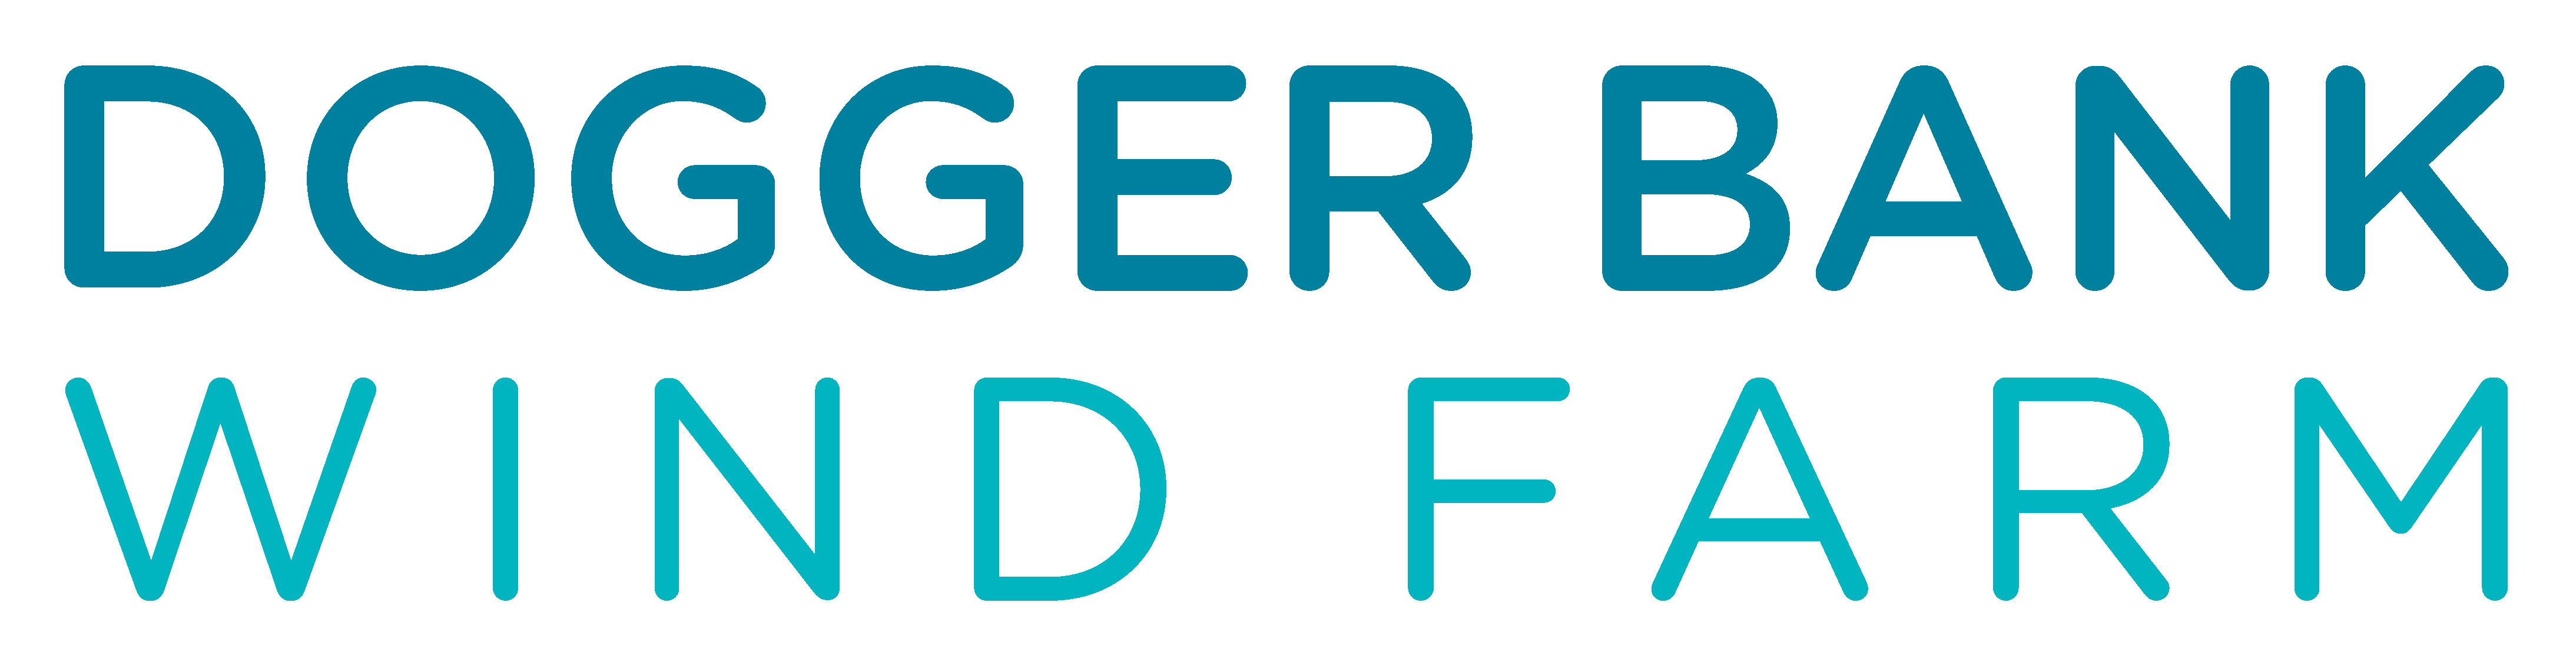 Dogger bank logo